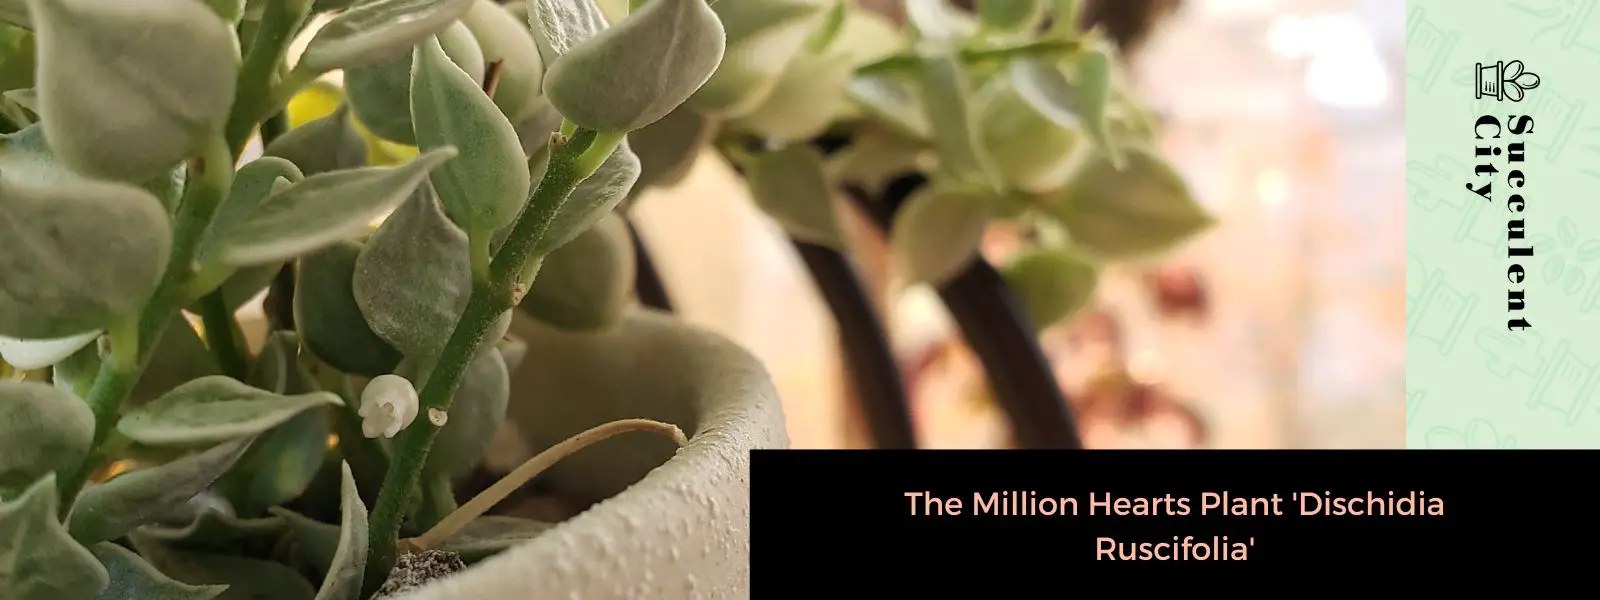 La planta del millón de corazones 'Dischidia Ruscifolia'